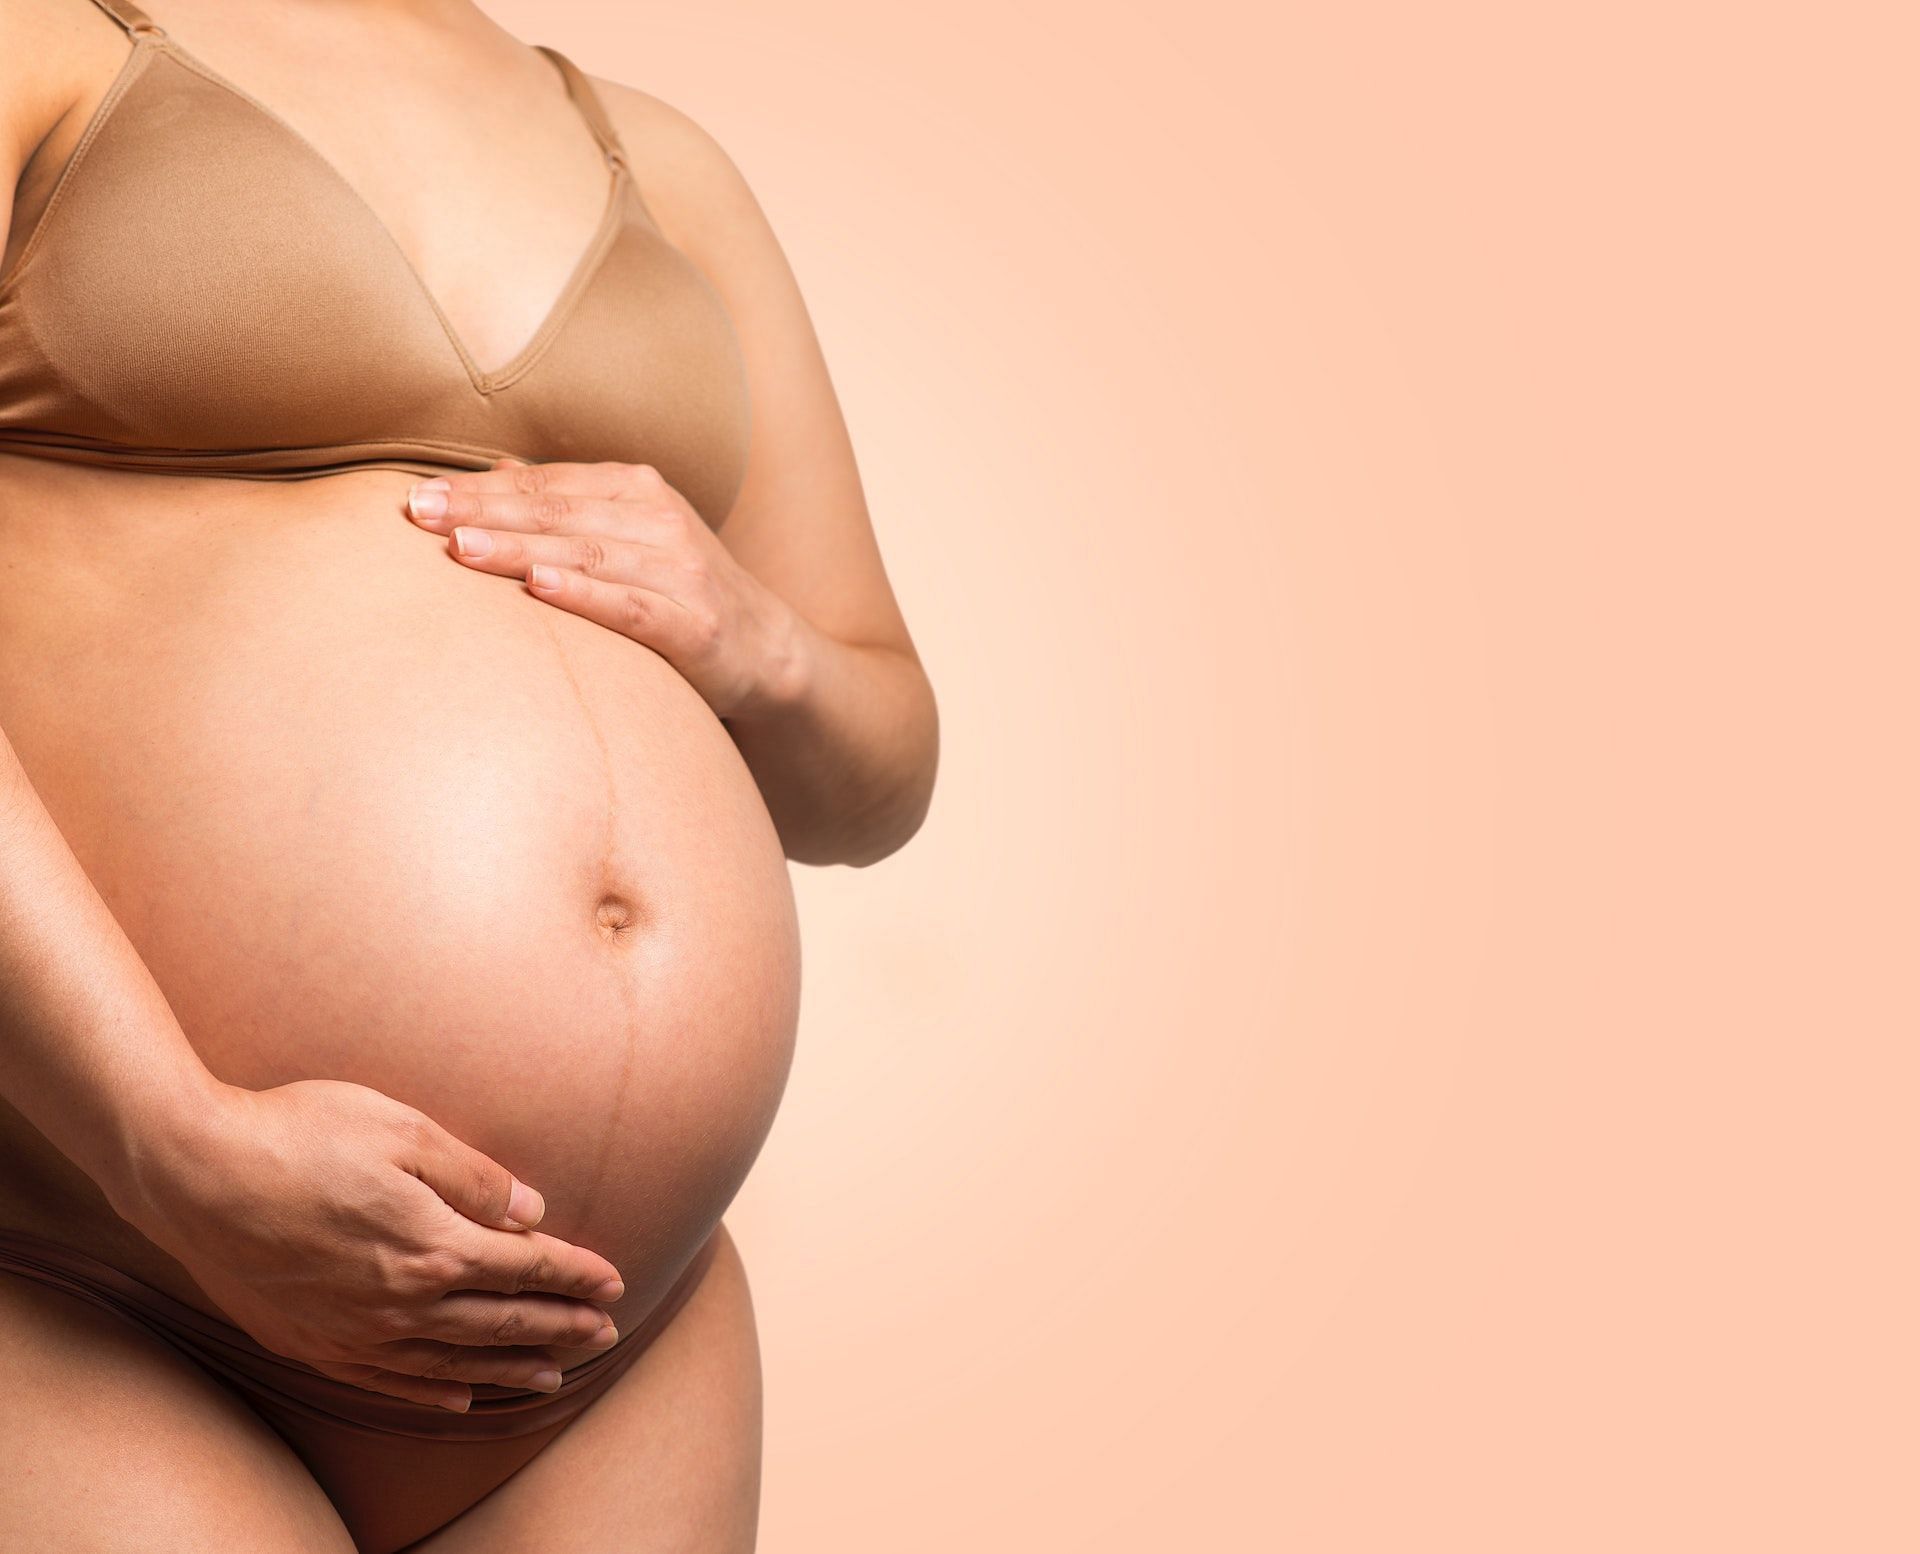 Dong quai is unsafe for pregnant women. (Photo via Pexels/Daniel Reche)